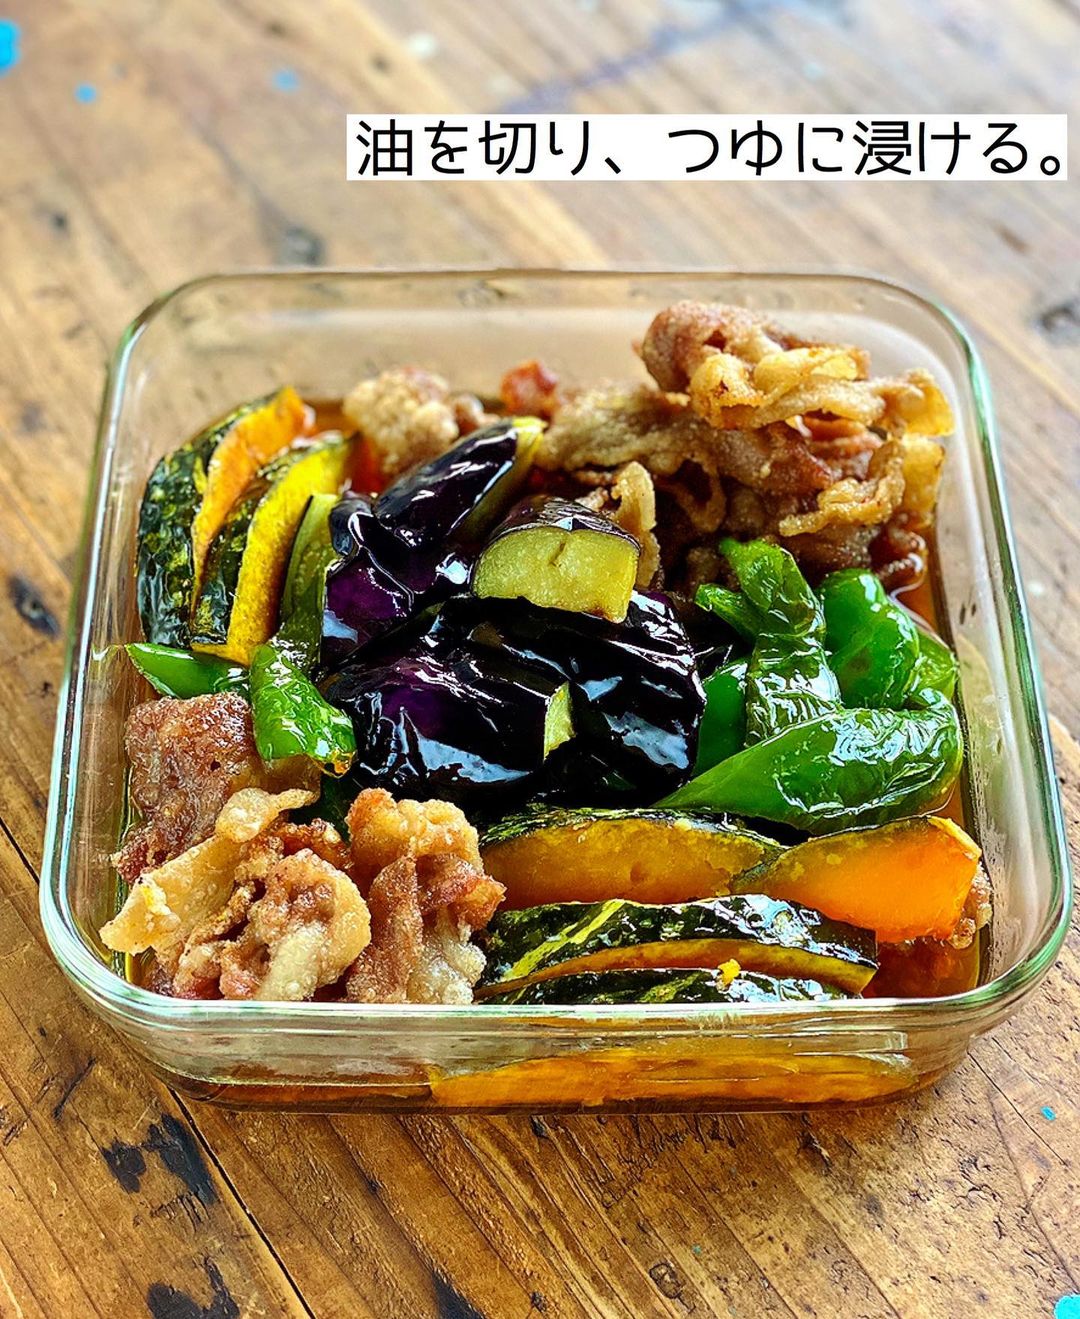 Mizuki【料理ブロガー・簡単レシピ】さんのインスタグラム写真 - (Mizuki【料理ブロガー・簡単レシピ】Instagram)「・﻿ 【レシピ】ーーーーーーーーーー﻿ ♡豚肉と夏野菜の焼きびたし♡﻿ ーーーーーーーーーーーーーーー﻿ ﻿ ﻿ ﻿ おはようございます(*^^*)﻿ ﻿ 今日ご紹介させていただくのは﻿ 豚肉と夏野菜の焼きびたし♩﻿ お肉も野菜も一度にたっぷり食べられる﻿ 夏の大満足おかずです(*´艸`)﻿ ﻿ 作り方は超簡単♡﻿ 全部揚げ焼きにして浸けるだけ！﻿ 味付けはめんつゆで失敗なし♩﻿ 作り立ても冷やしても美味しいので﻿ 作り置きにもぴったりですよ〜♡﻿ ﻿ ＊今回のように複数種類の素材に火を通す時は﻿ それぞれに合わせて加熱方法を変えるより﻿ 揚げ焼きにする方が断然ラクでおすすめ！﻿ 少ない油でも食材を入れると嵩が上がり﻿ じゅうぶんに加熱できますよ(*^^*)﻿ ﻿ ﻿ ﻿ ーーーーーーーーーーーーーーーーーーーー﻿ 【2〜3人分】﻿ 豚こま切れ肉...150g﻿ なす...1本﻿ ピーマン...2個﻿ かぼちゃ...150g﻿ ●めんつゆ(2倍濃縮)...100ml﻿ ●水...80ml﻿ ●生姜チューブ...2cm﻿ 片栗粉・サラダ油・大根おろし...各適量﻿ ﻿ 1.●は合わせておく。﻿ 2.なすは4cm大に切り、水に3分晒して水気を切る。ピーマンは一口大の乱切りにする。かぼちゃは1cm幅に切って長さを半分にする。豚肉は適当に広げて片栗粉をまぶす。﻿ 3.フライパンに5mmの油を中火で熱し、2を入れて揚げ焼きにする(ポイント参照)。火が通ったものから引き上げて油を切り、1に浸ける。﻿ 4.つゆごと器に盛り、大根おろしをのせる。﻿ ーーーーーーーーーーーーーーーーーーーー﻿ ﻿ ﻿ ﻿ 《ポイント》﻿ ♦︎工程3→野菜から油に入れ、火が通ったものから取り出し、スペースが空いてきたら豚肉も入れて揚げ焼きにして下さい♩﻿ ♦︎少ない油でも野菜や豚肉を入れると嵩が上がります♩﻿ ﻿ ﻿ ﻿ ﻿ ﻿ ﻿ ＿＿＿＿＿＿＿＿＿＿＿＿＿＿＿＿＿﻿ 🎀6刷重版しました🎀﻿ 混ぜて焼くだけ。はじめてでも失敗しない！﻿ 【#ホットケーキミックスのお菓子 】﻿ ﻿ 一冊まるっとホケミスイーツ♩﻿ 普段のおやつから﻿ 特別な日にも使えるレシピを﻿ この一冊に詰め込みました(*^^*)﻿ ホットケーキミックスを使えば﻿ 簡単に本格的なお菓子が作れますよ♡﻿ ＿＿＿＿＿＿＿＿＿＿＿＿＿＿＿＿＿﻿ ﻿ ﻿ ﻿ ＿＿＿＿＿＿＿＿＿＿＿＿＿＿＿＿＿＿＿﻿ 📕6刷重版しました📕﻿ 簡単・時短！ 毎日のごはんがラクになる﻿ ✨🦋 【 #Mizukiの今どき和食 】🦋✨﻿ ＿＿＿＿＿＿＿＿＿＿＿＿＿＿＿＿＿＿＿﻿ なるべく少ない材料で﻿ 手間も時間も省きながら﻿ 簡単にできるおいしい和食レシピ♩﻿ 簡単に失敗なくマスターできる一冊で﻿ もっと気軽に、カジュアルに﻿ 和食を楽しんで下さいね(*^^*)﻿ ＿＿＿＿＿＿＿＿＿＿＿＿＿＿＿＿＿＿＿﻿ ﻿ ⭐️ストーリー、ハイライト、プロフ画面に﻿ 本のURLを貼らせていただいております♩﻿ →(@mizuki_31cafe )﻿ ﻿ ﻿ ﻿ ﻿ ﻿ #なす#かぼちゃ#ピーマン#豚肉#めんつゆ#作り置き#お弁当#Mizuki#簡単レシピ#時短レシピ#節約レシピ#料理#レシピ#フーディーテーブル#マカロニメイト#おうちごはん#デリスタグラマー#料理好きな人と繋がりたい#おうちごはん#写真好きな人と繋がりたい#お菓子作りならコッタlover#foodpic#cooking#recipe#lin_stagrammer#foodporn#yummy#豚肉と夏野菜の焼きびたしm」7月20日 7時26分 - mizuki_31cafe